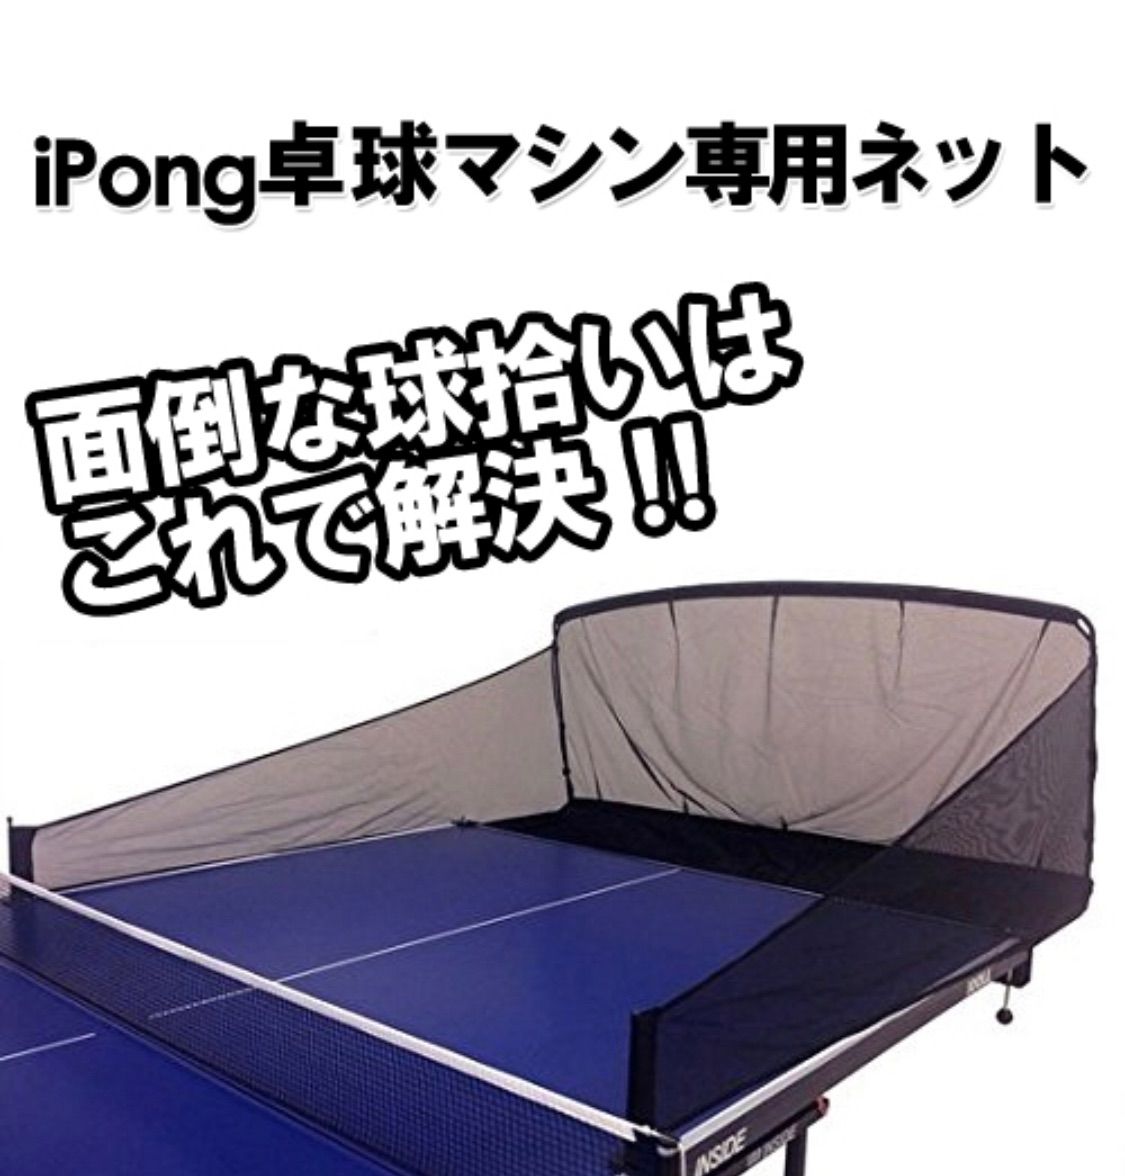 i pong pro アイポン プロ 自動卓球マシン 専用ネット付き